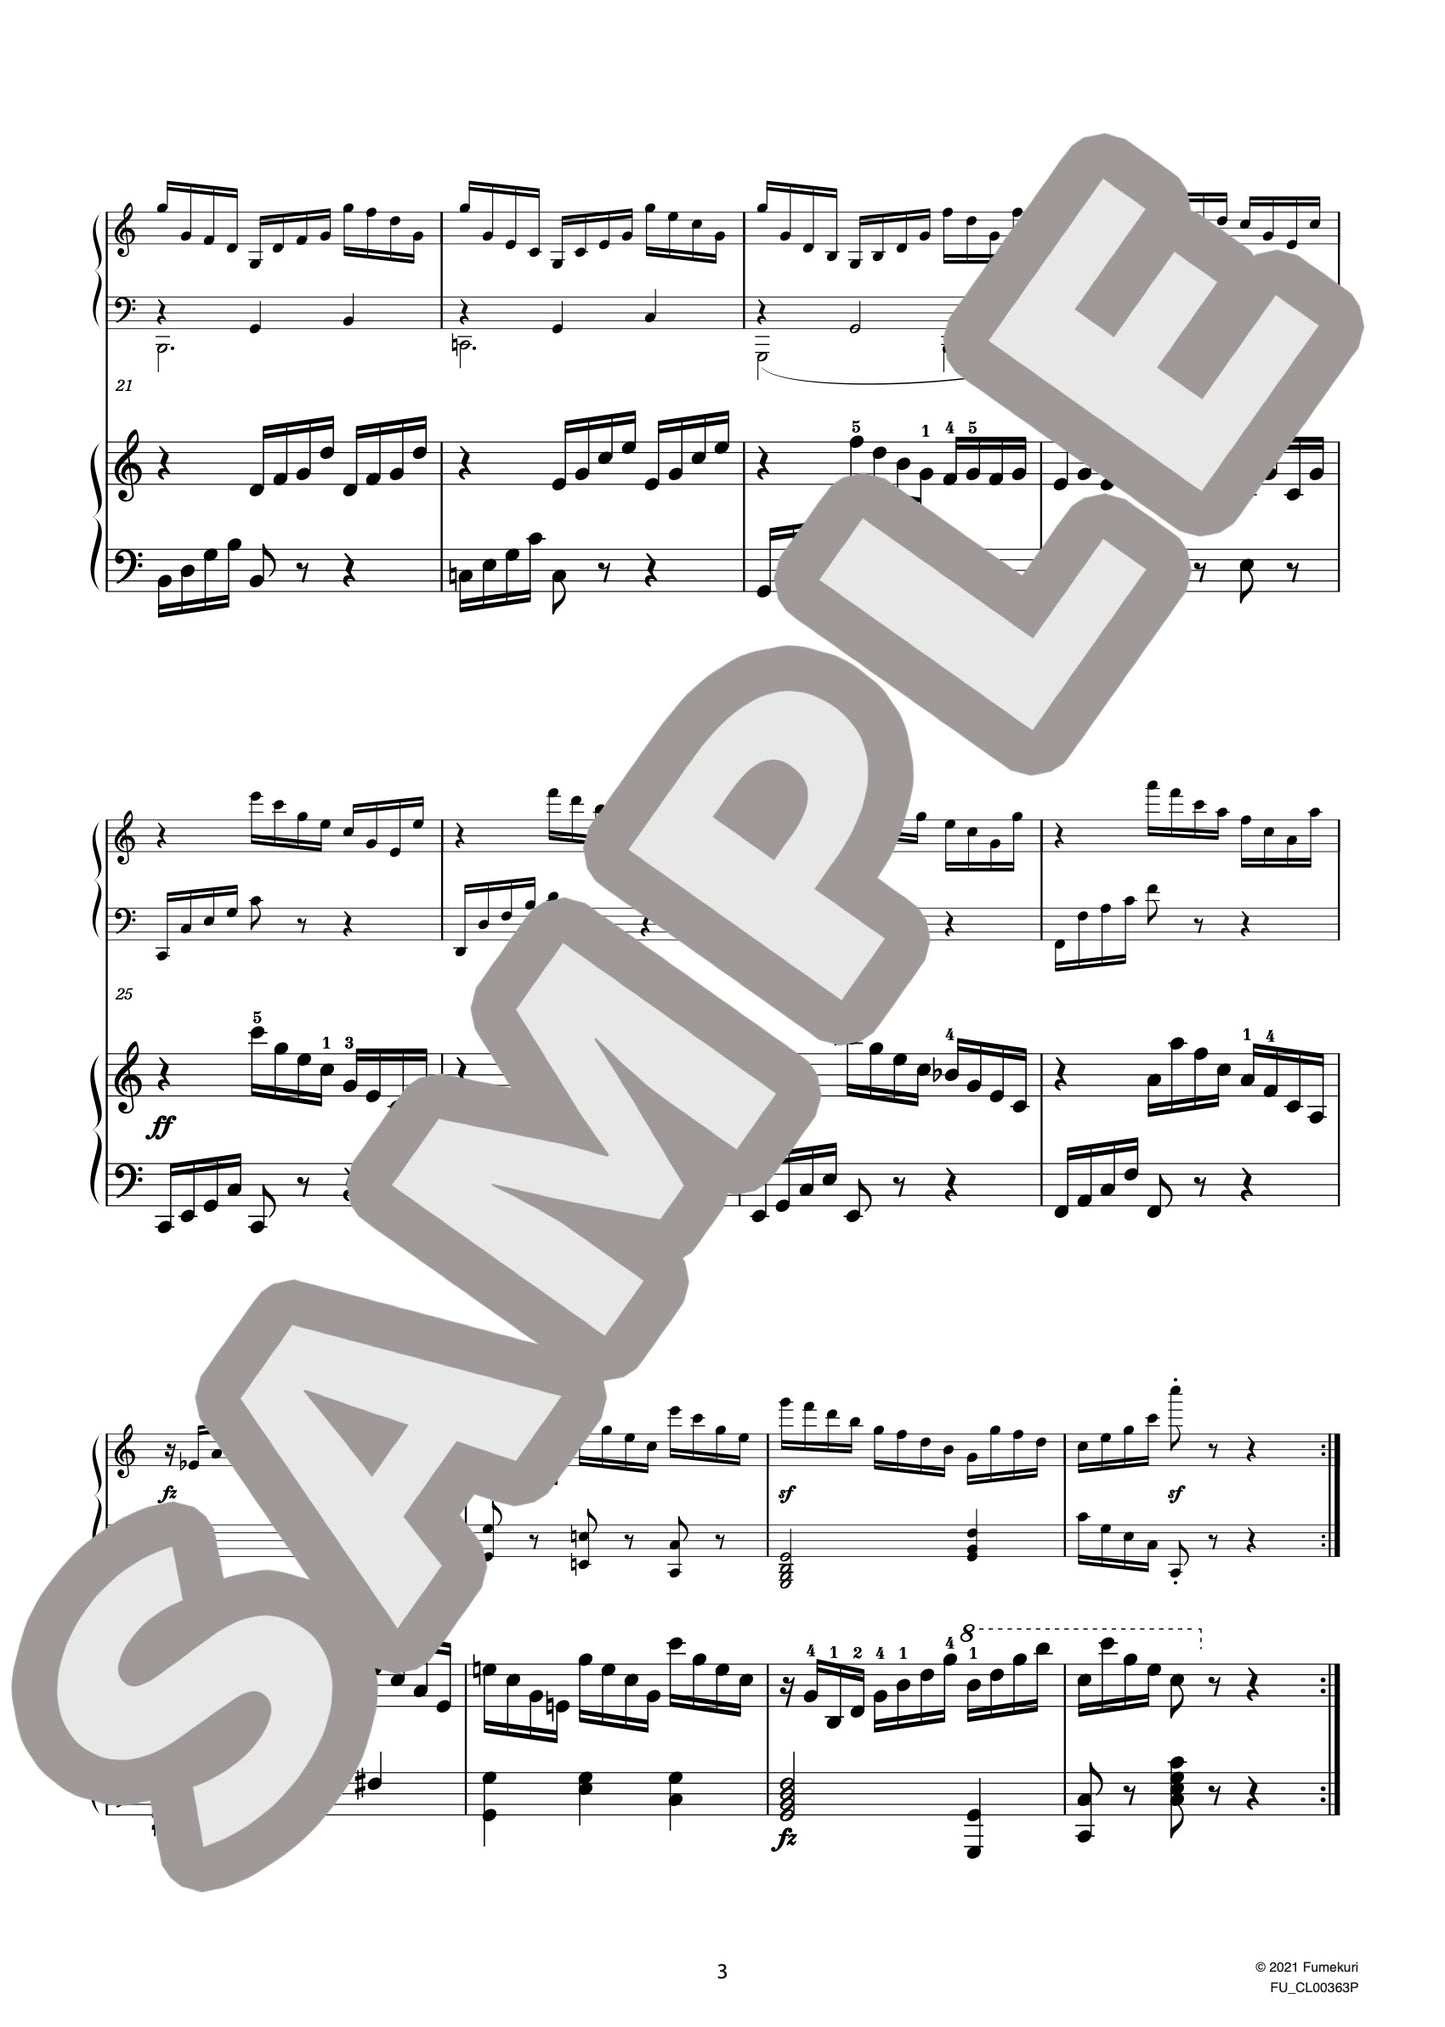 2台のピアノのための速度練習曲（40番練習曲）作品299b 第30番（CZERNY) / クラシック・オリジナル楽曲【中上級】